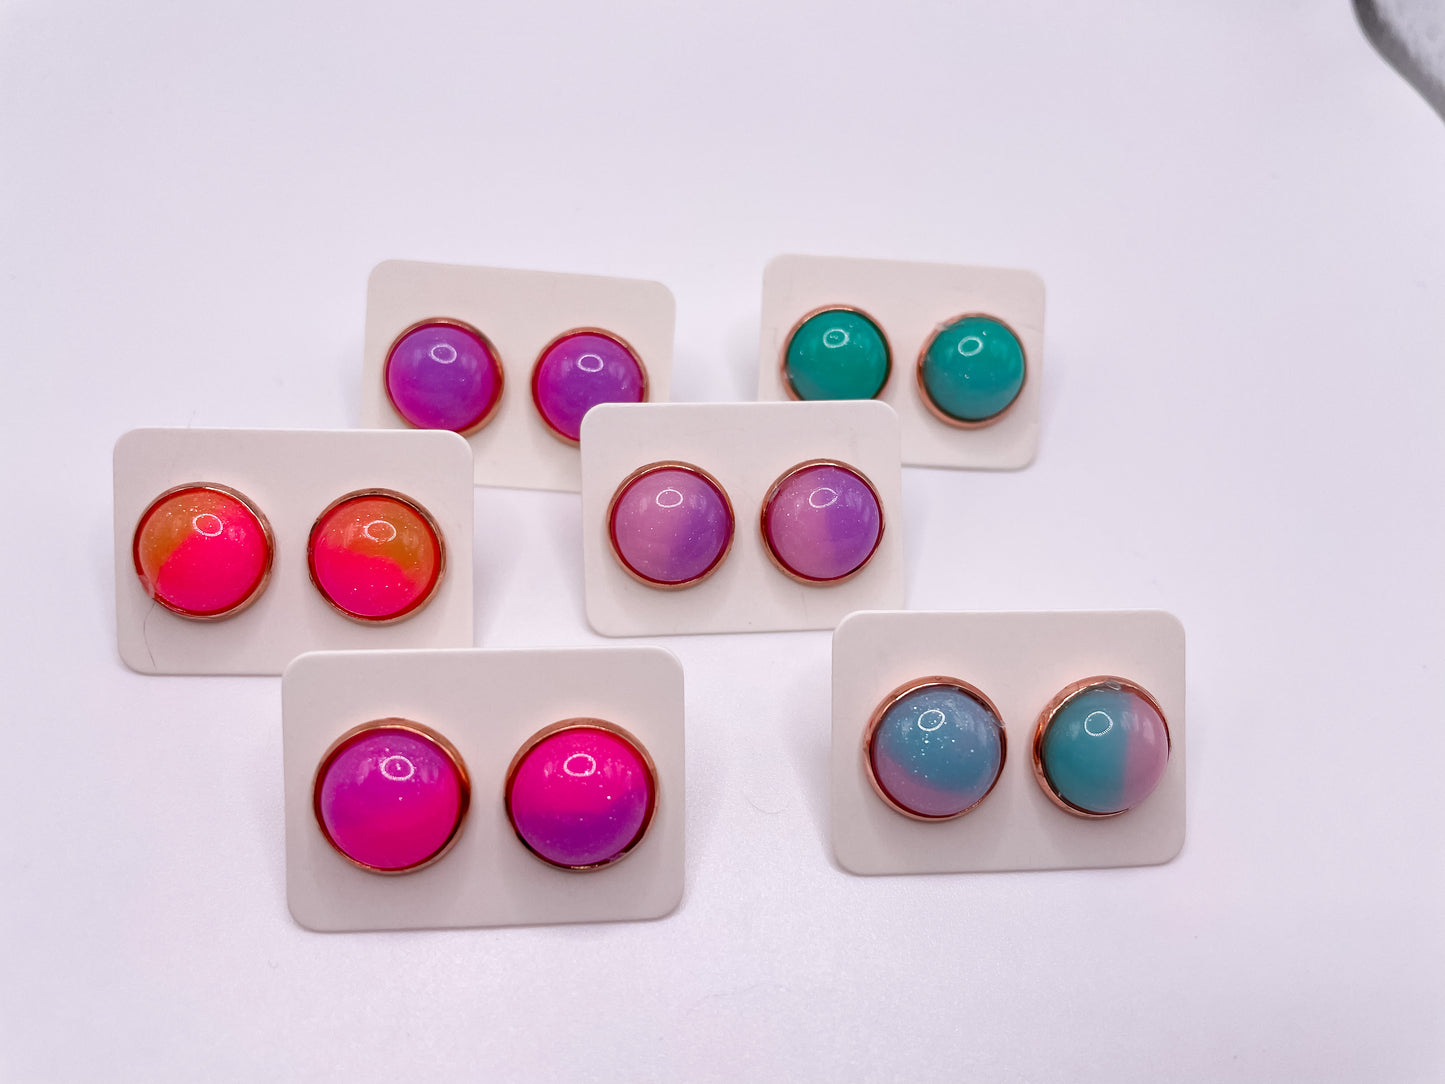 Neon 80s Style Earring Studs | Katelyn Style Earrings |12 MM Round Studs | Round Stud Earrings